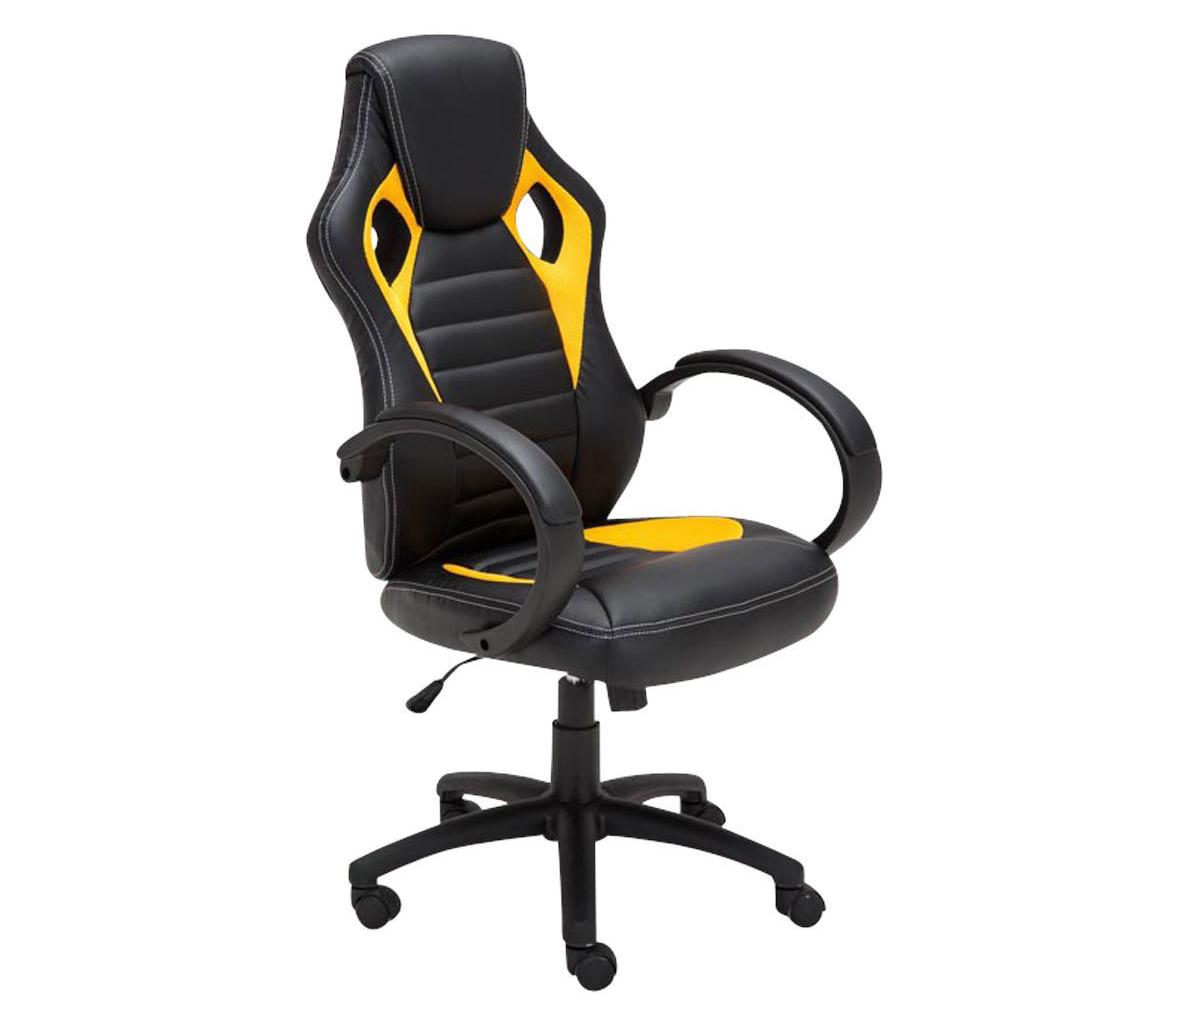 Cadeira Gaming ASCARI, Design Desportivo e Extra Comodidade, Pele e Tecido, Cor Preto e Amarelo